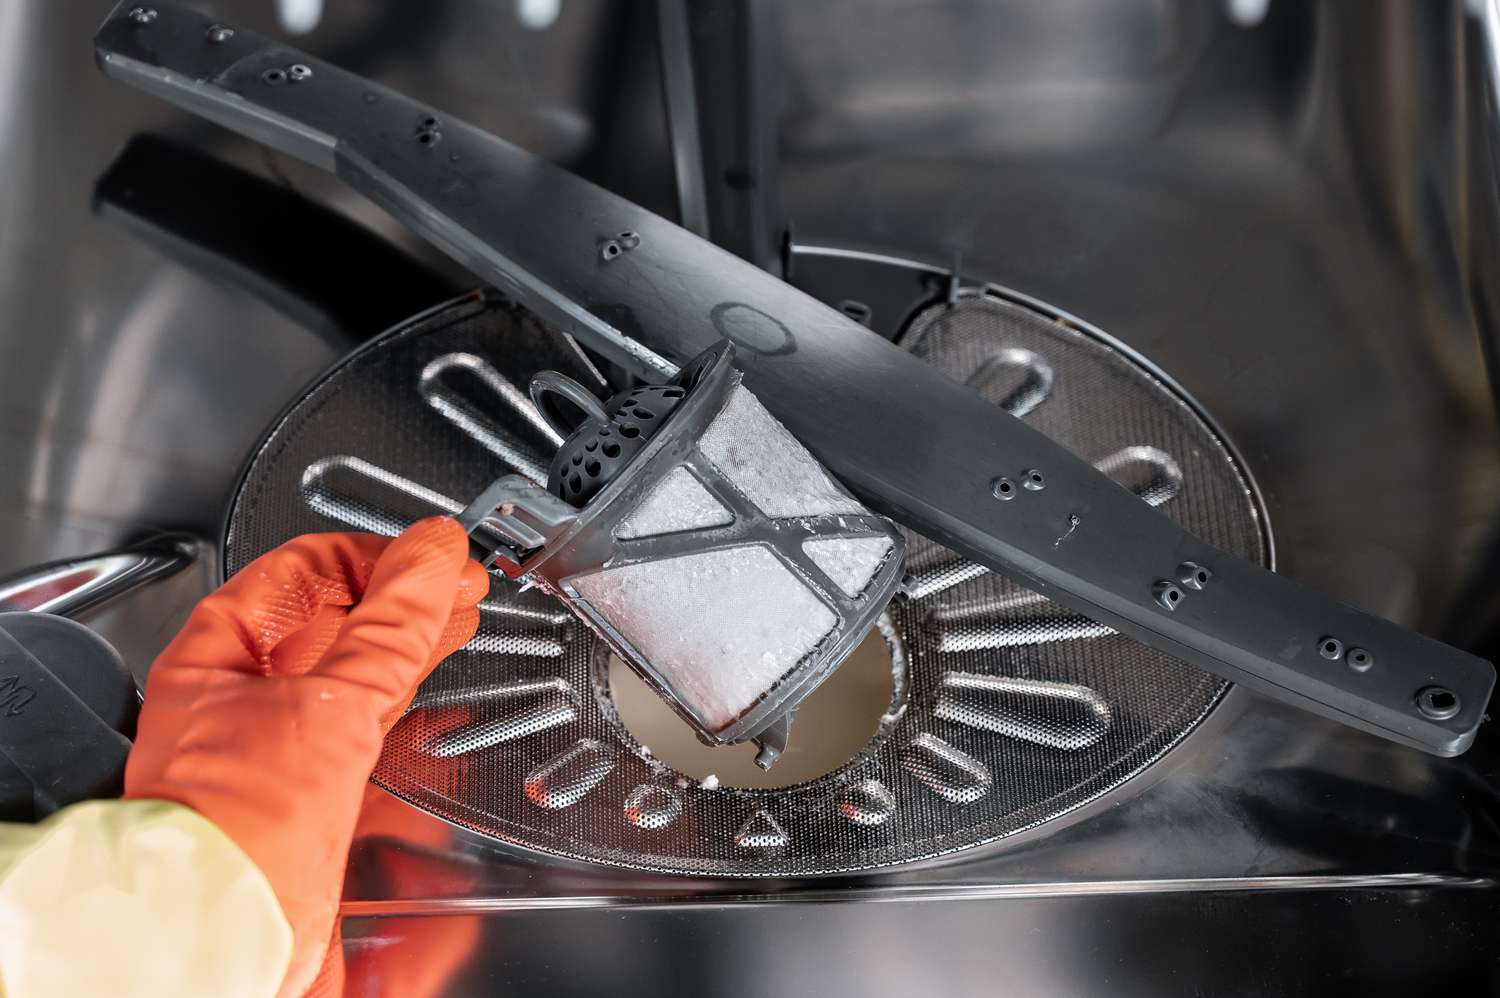 Filtre de lave-vaisselle retiré du filtre cylindrique avec des gants orange